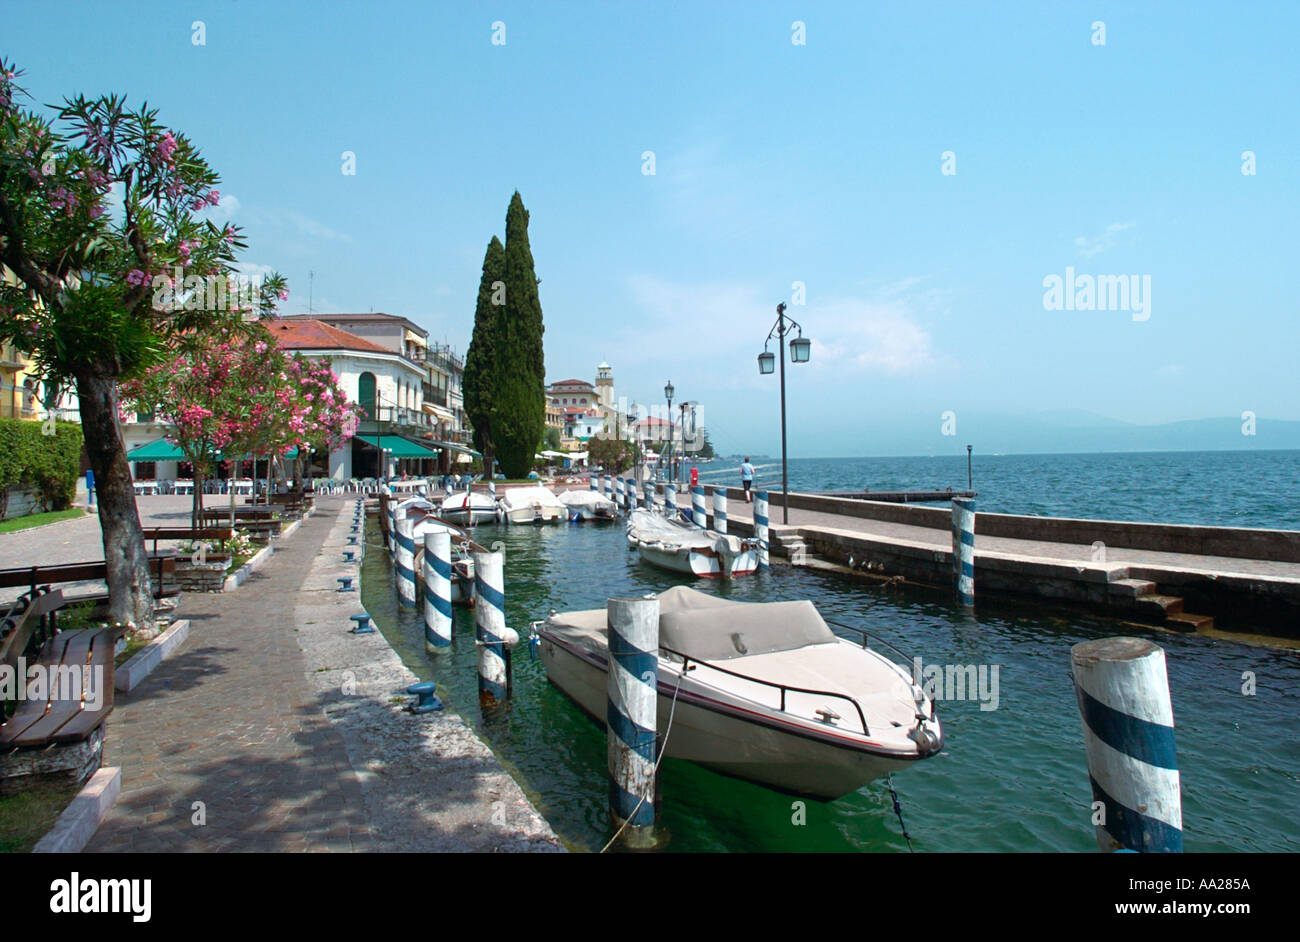 Sul fronte del lago, Gardone Riviera sul lago di Garda, Italia Foto Stock